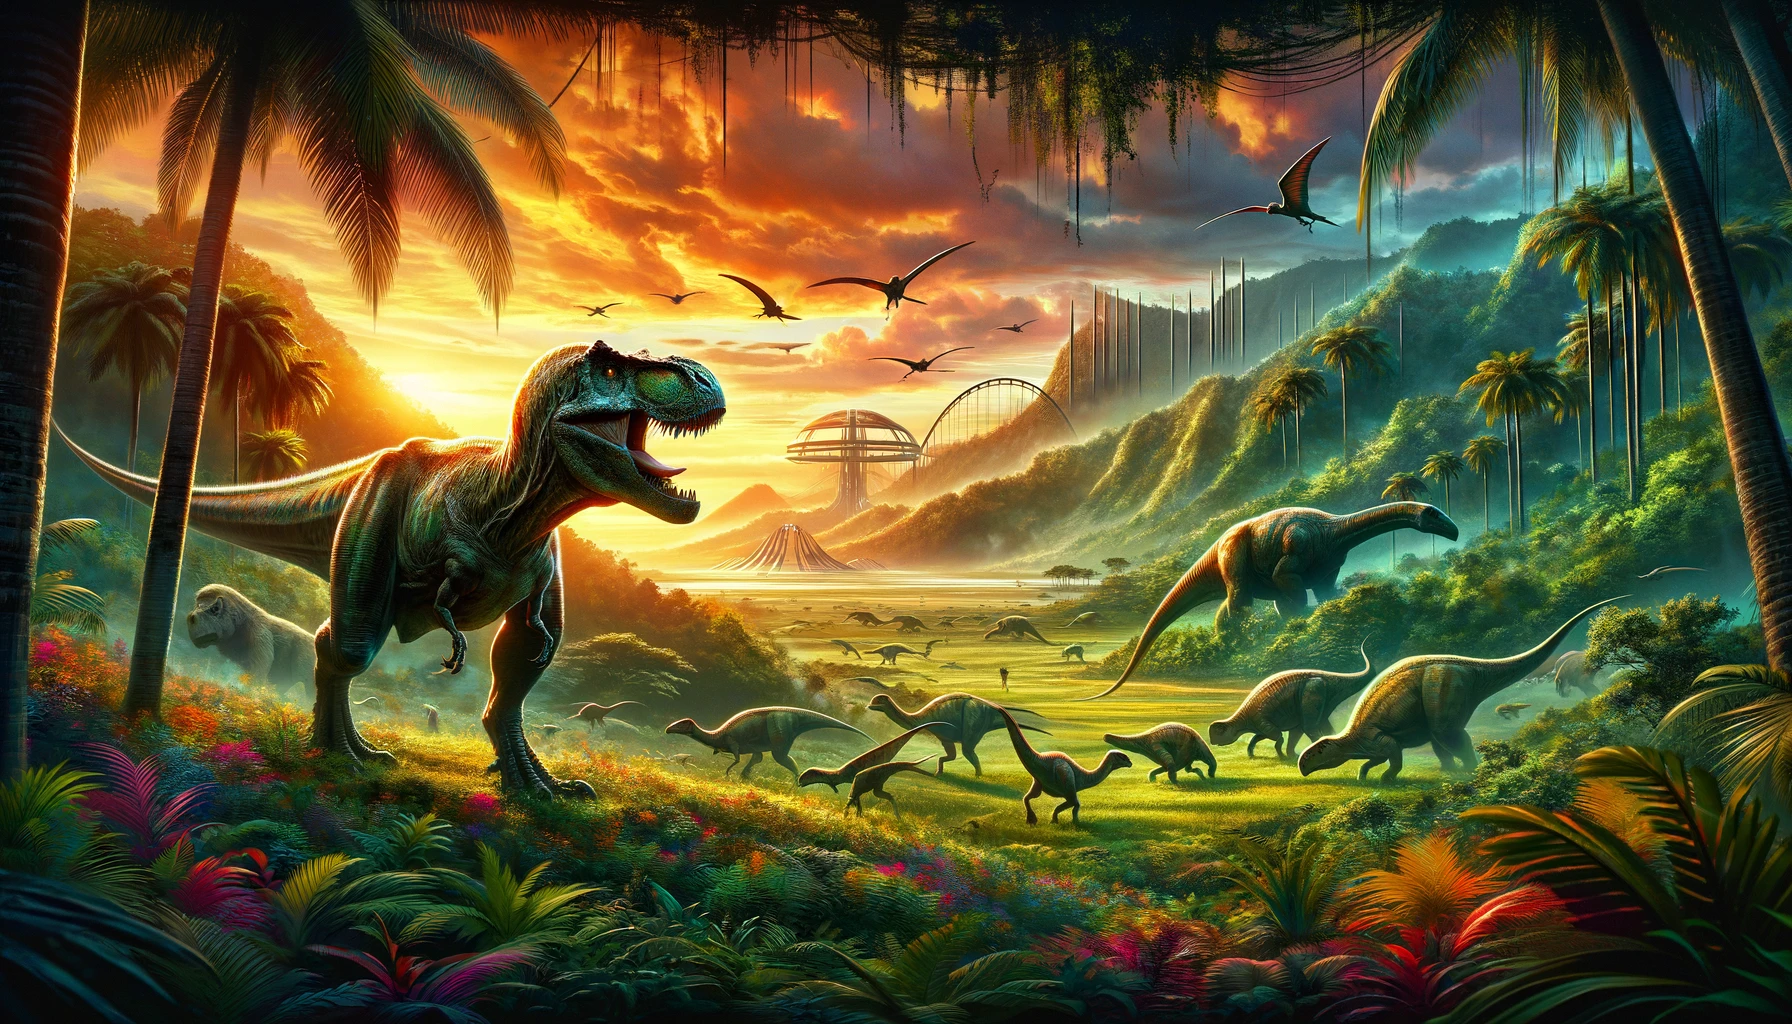 La próxima película de la serie Jurassic World programada para su estreno en julio de 2025